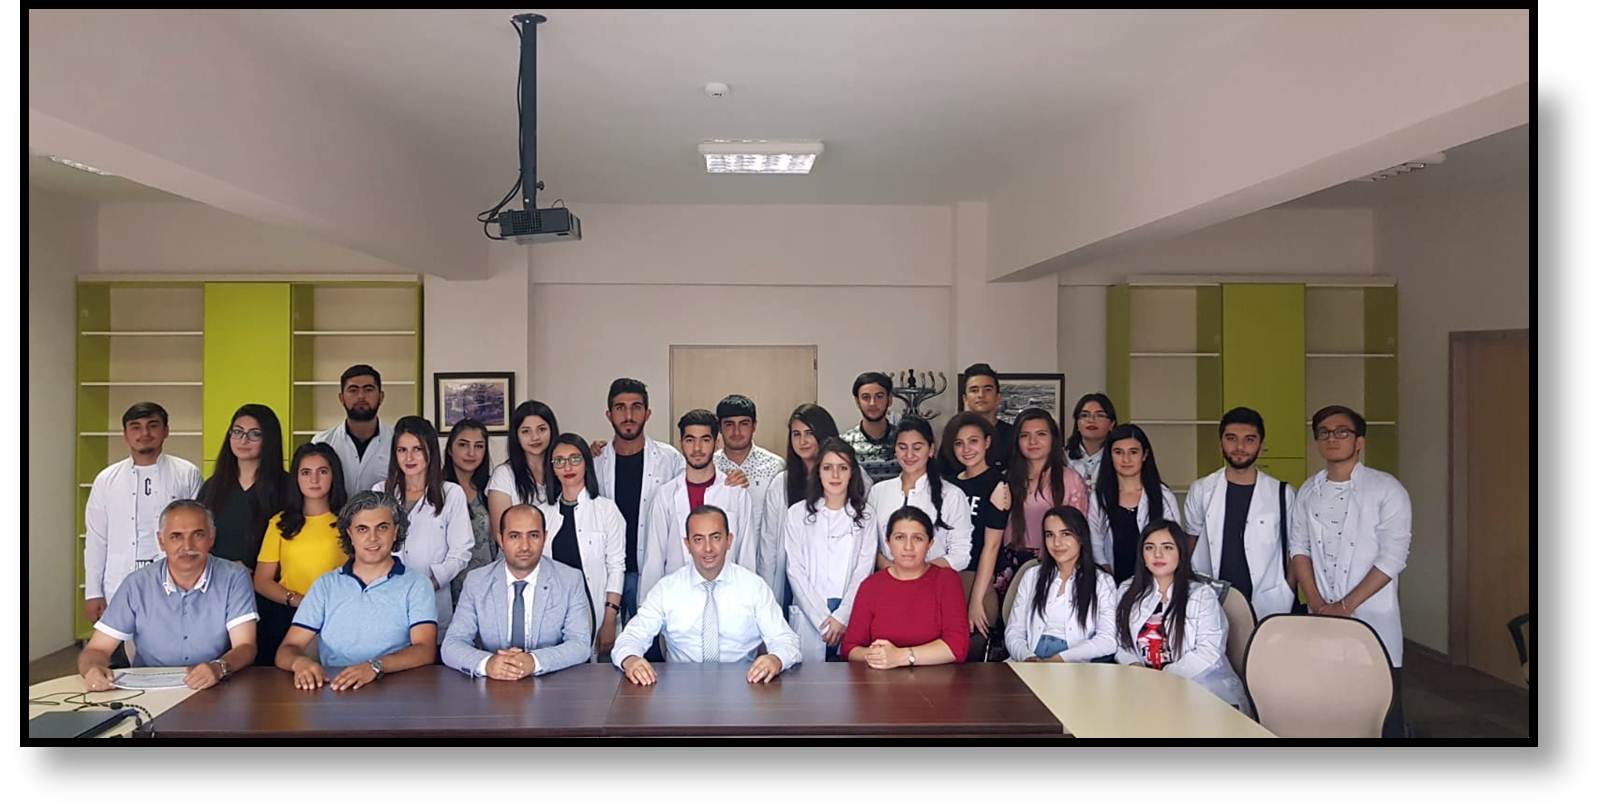 erzincan binali yildirim universitesi find and study 64 - Erzincan Binali Yıldırım Üniversitesi